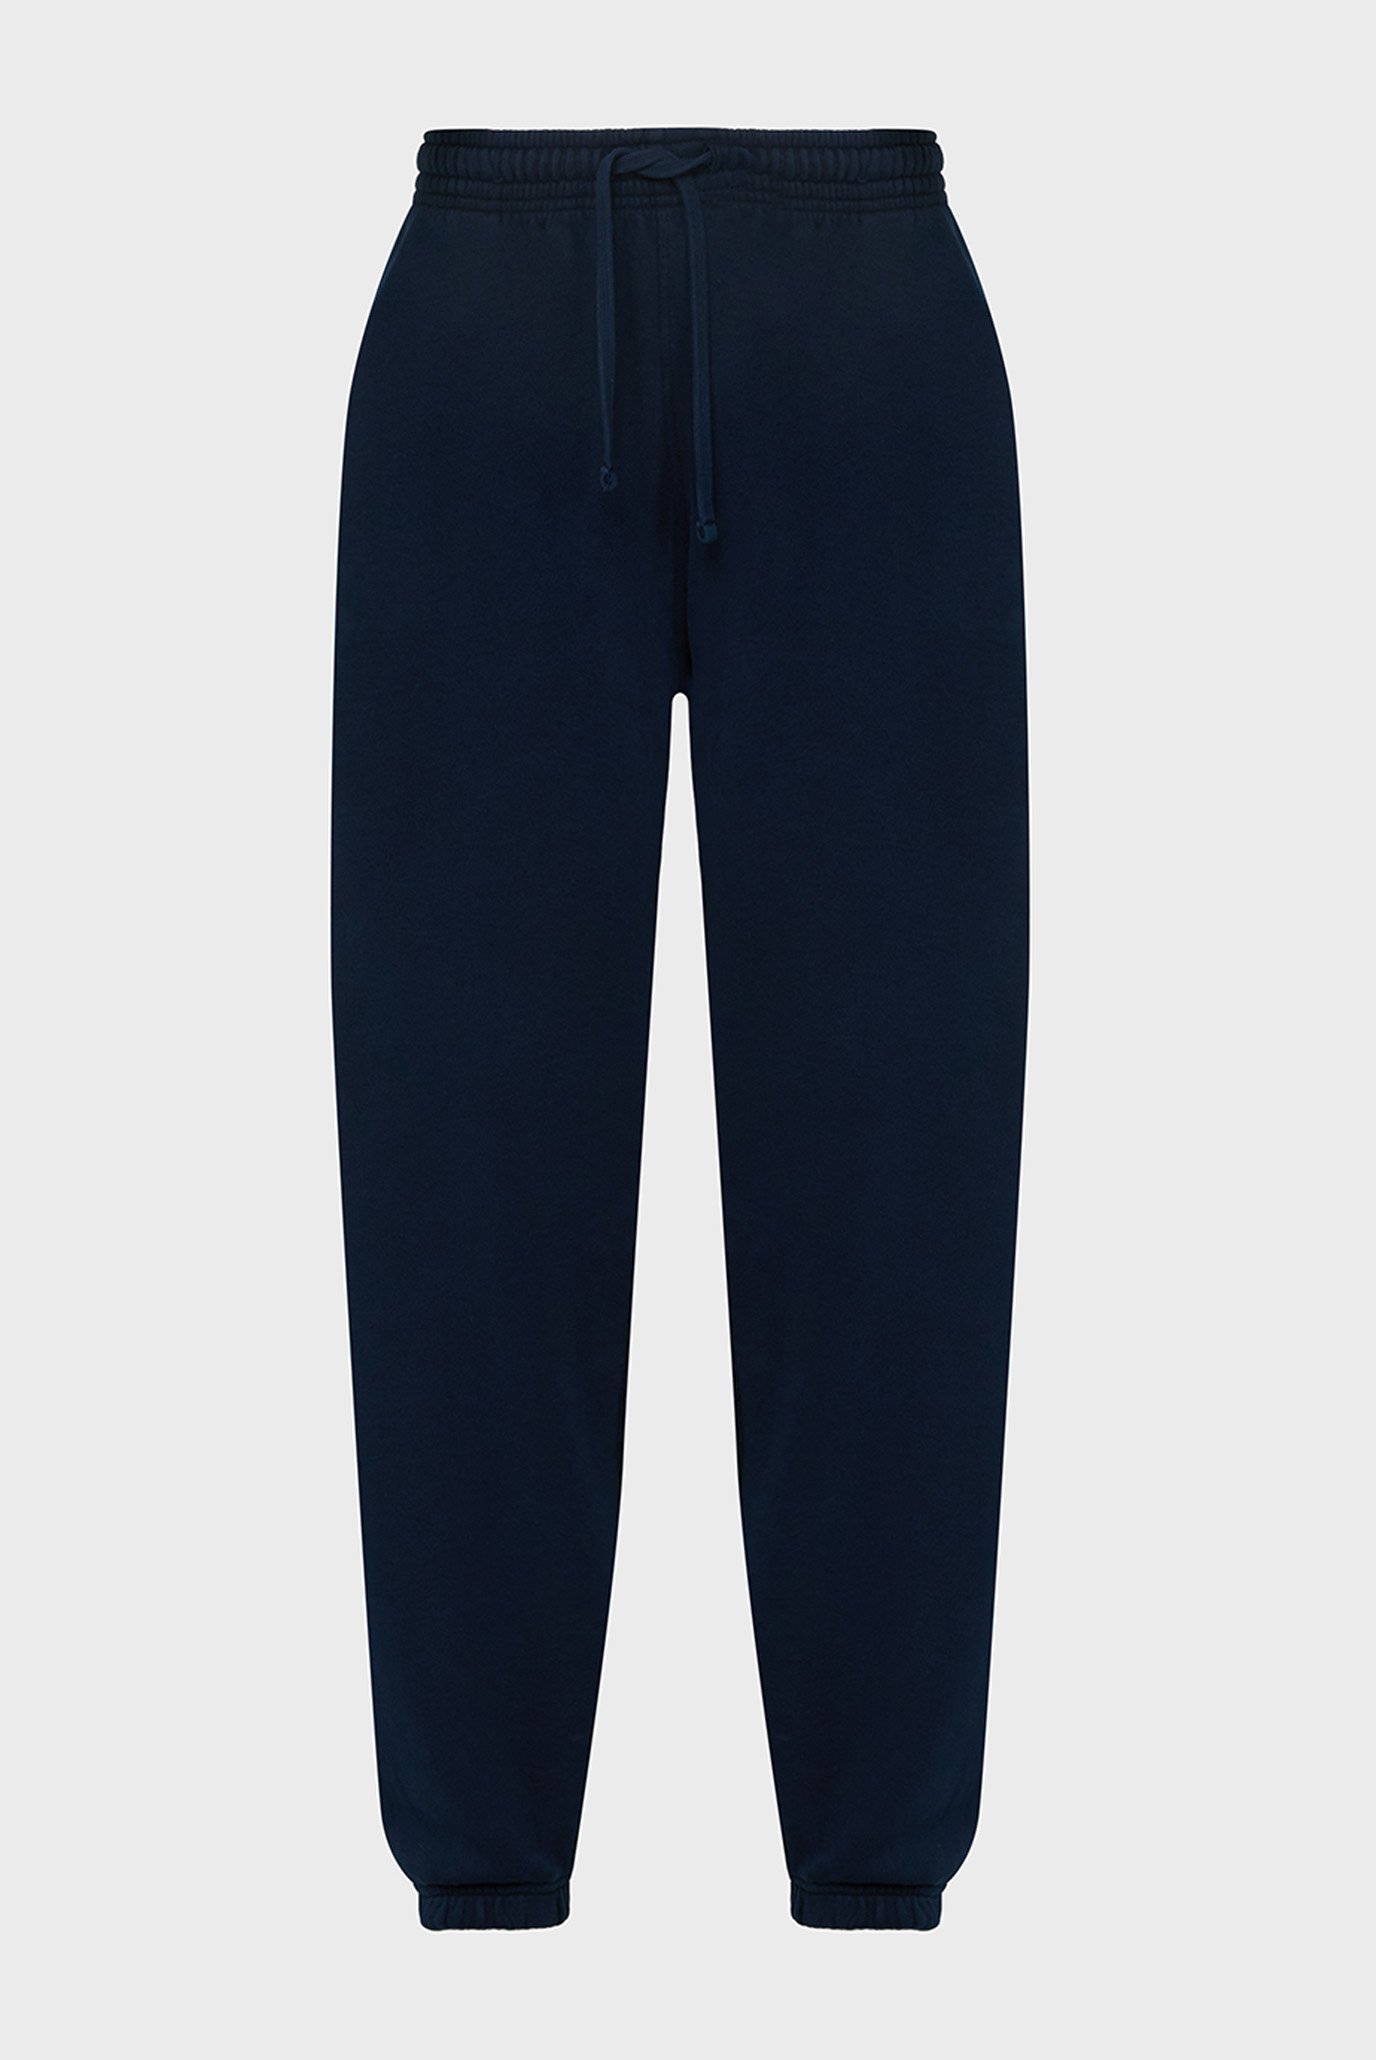 Чоловічі темно-сині спортивні штани TJM RLX SWTPNT NW CLASSICS 1